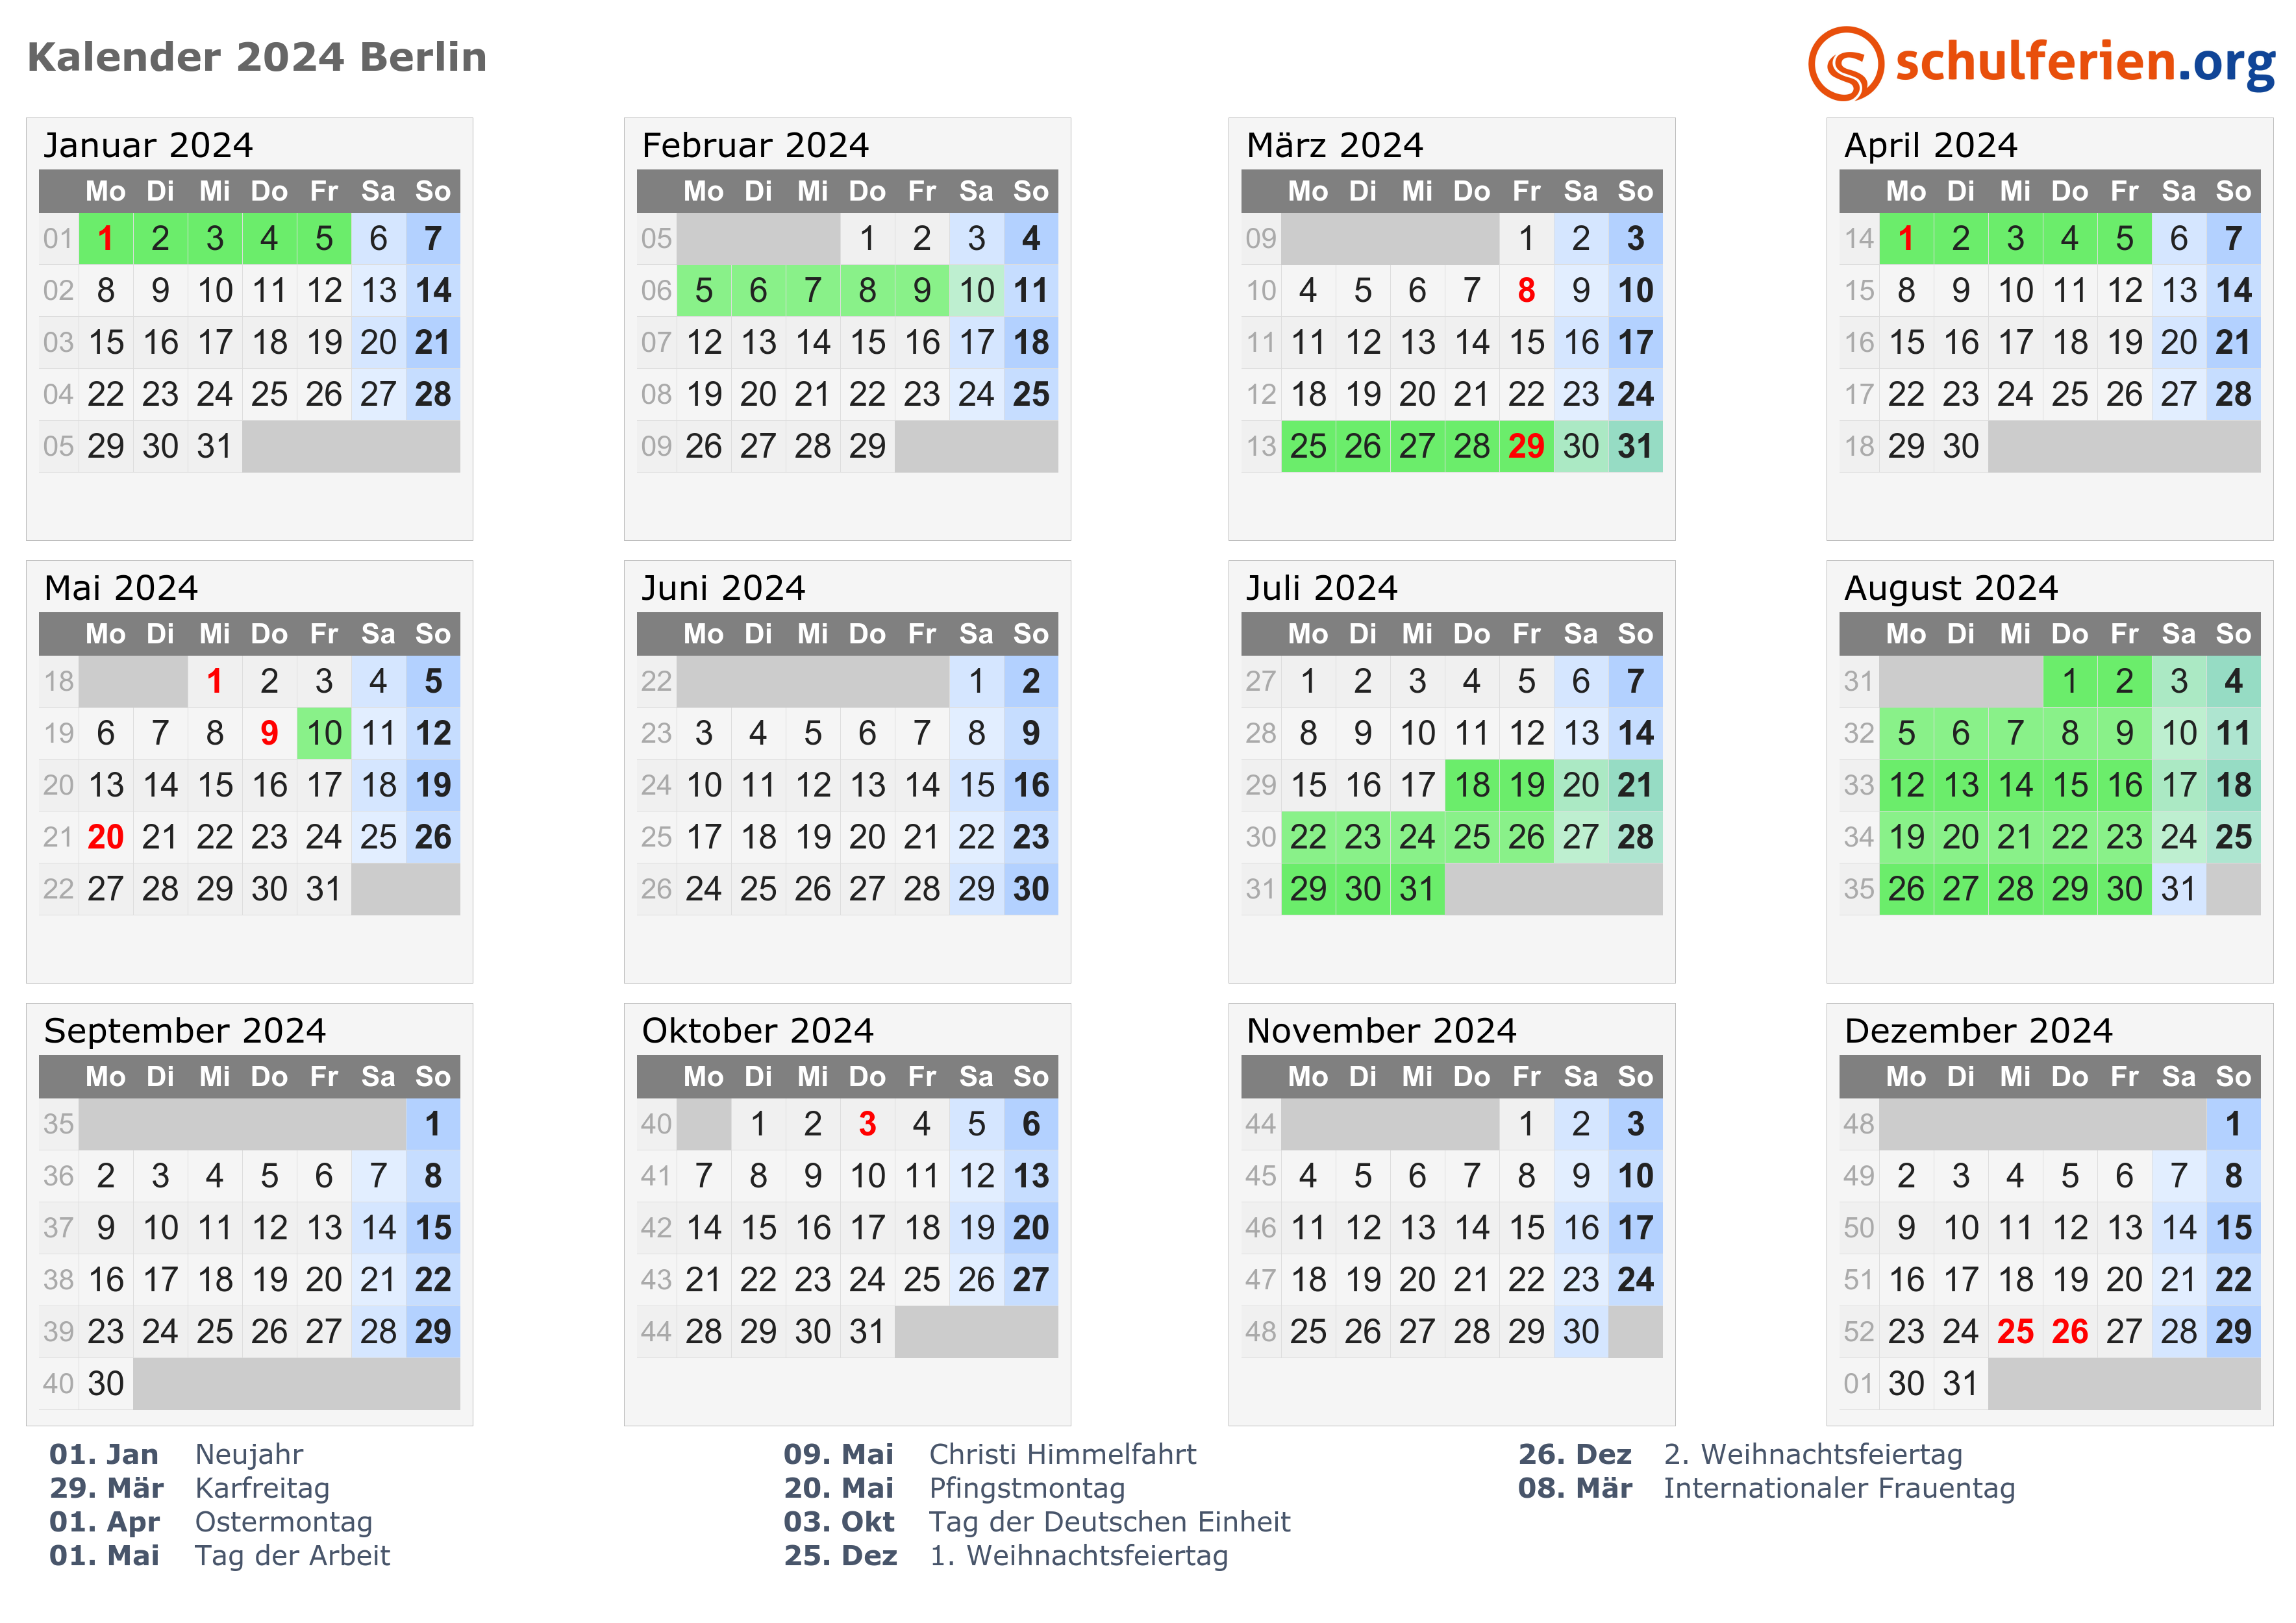 Vub Academische Kalender 2024 Best Latest Famous School Calendar